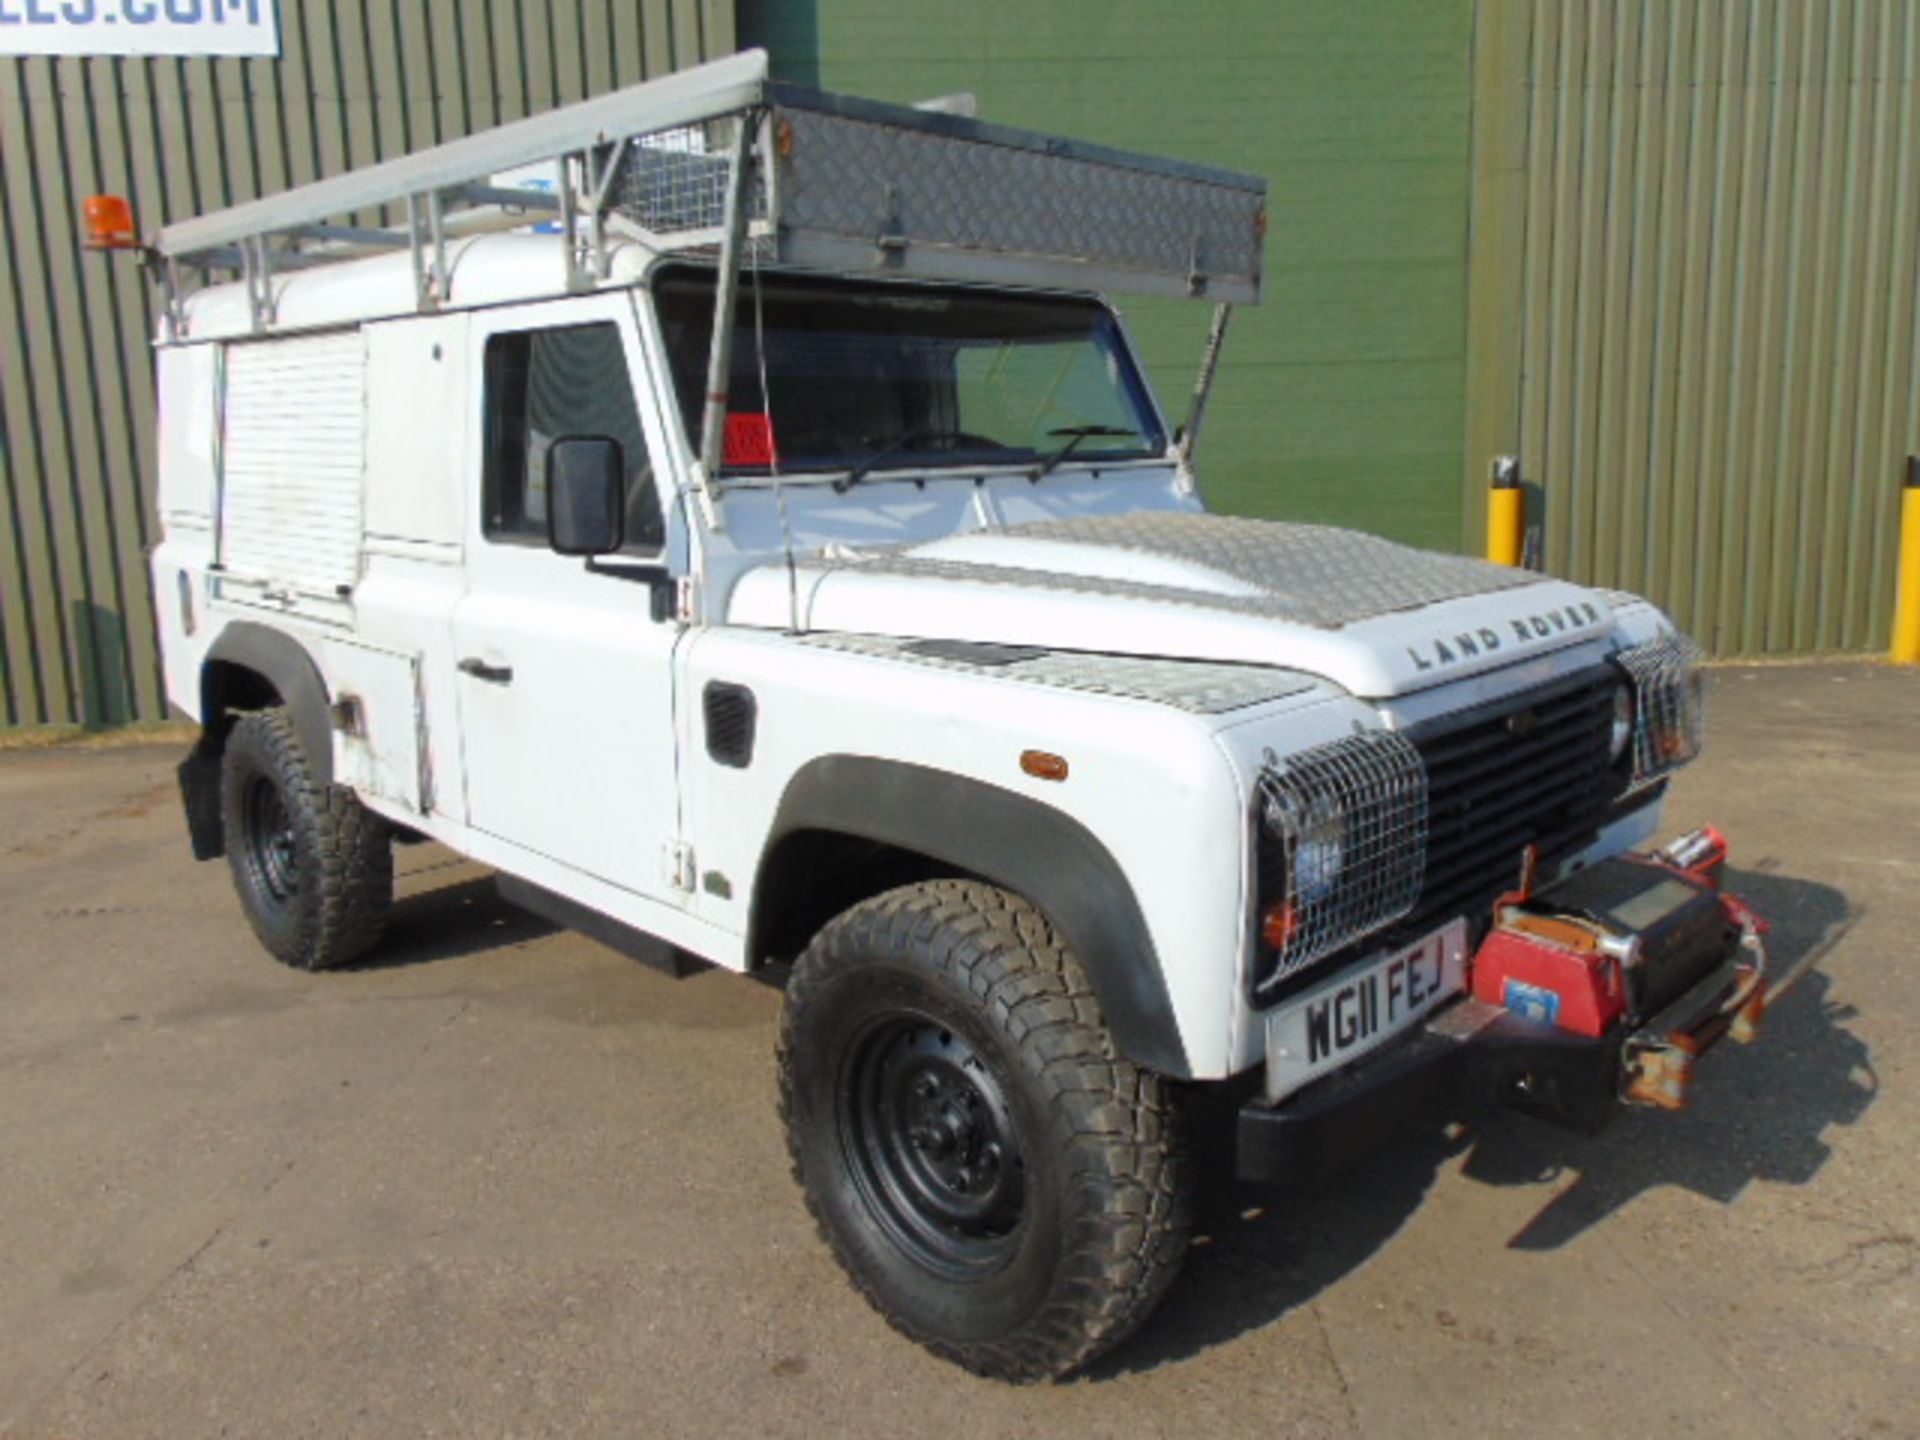 2011 Land Rover Defender 110 Puma hardtop 4x4 Utility vehicle (mobile workshop)